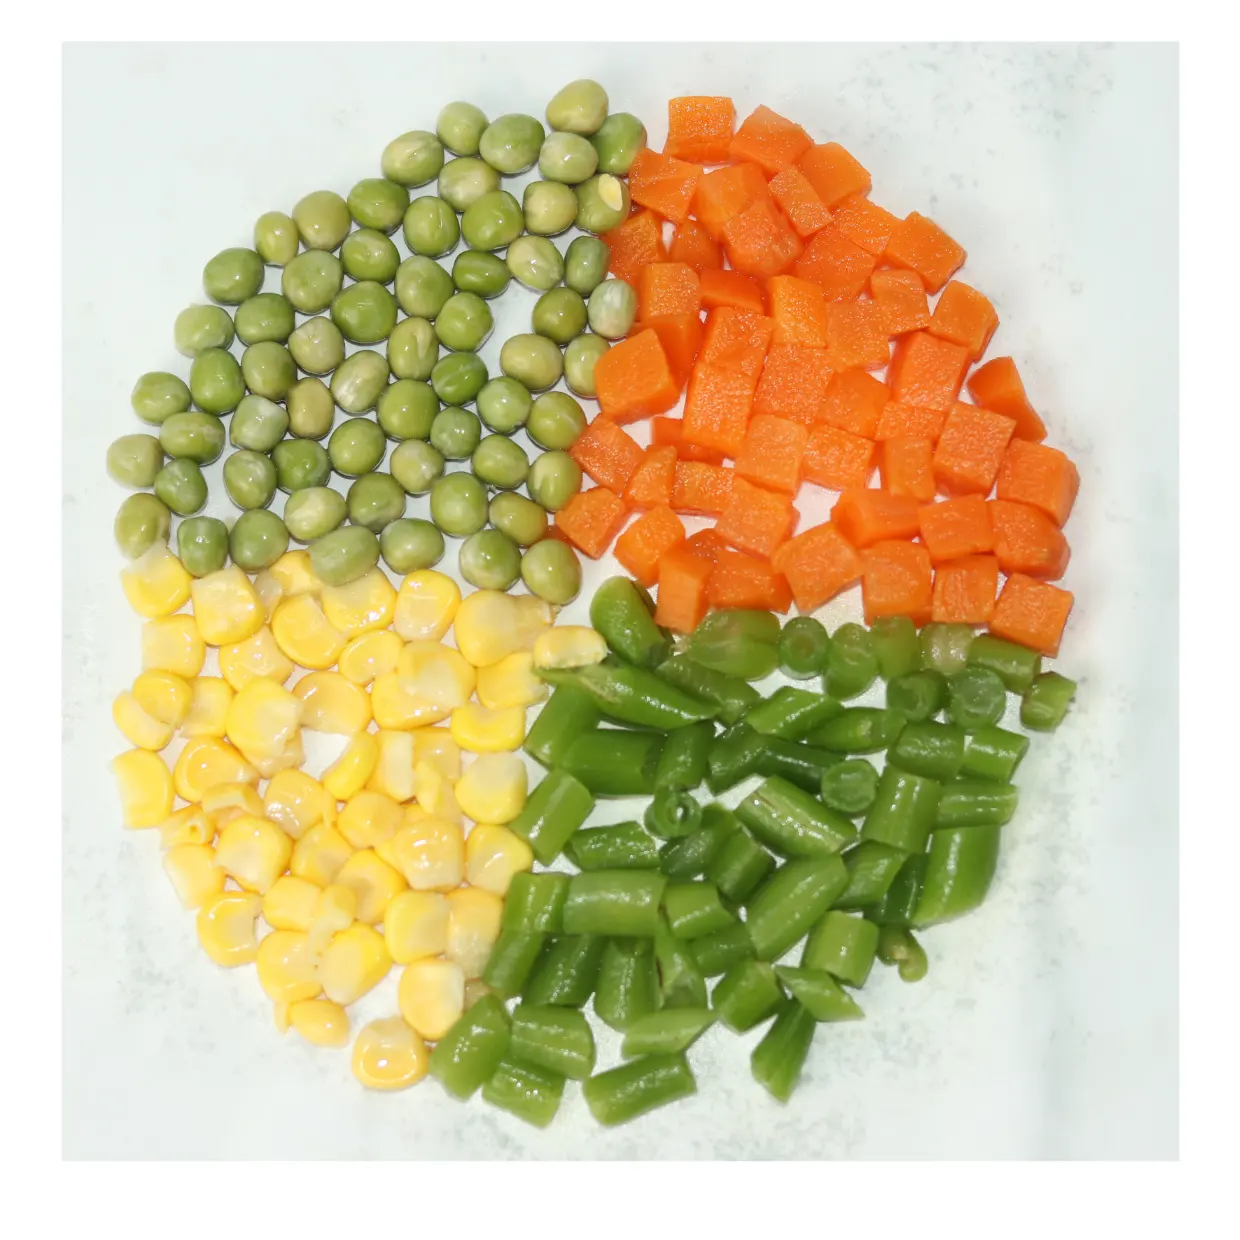 冷凍混合野菜天然野菜スイートグリーンビーンズ冷凍スイートコーンキャロット調理用